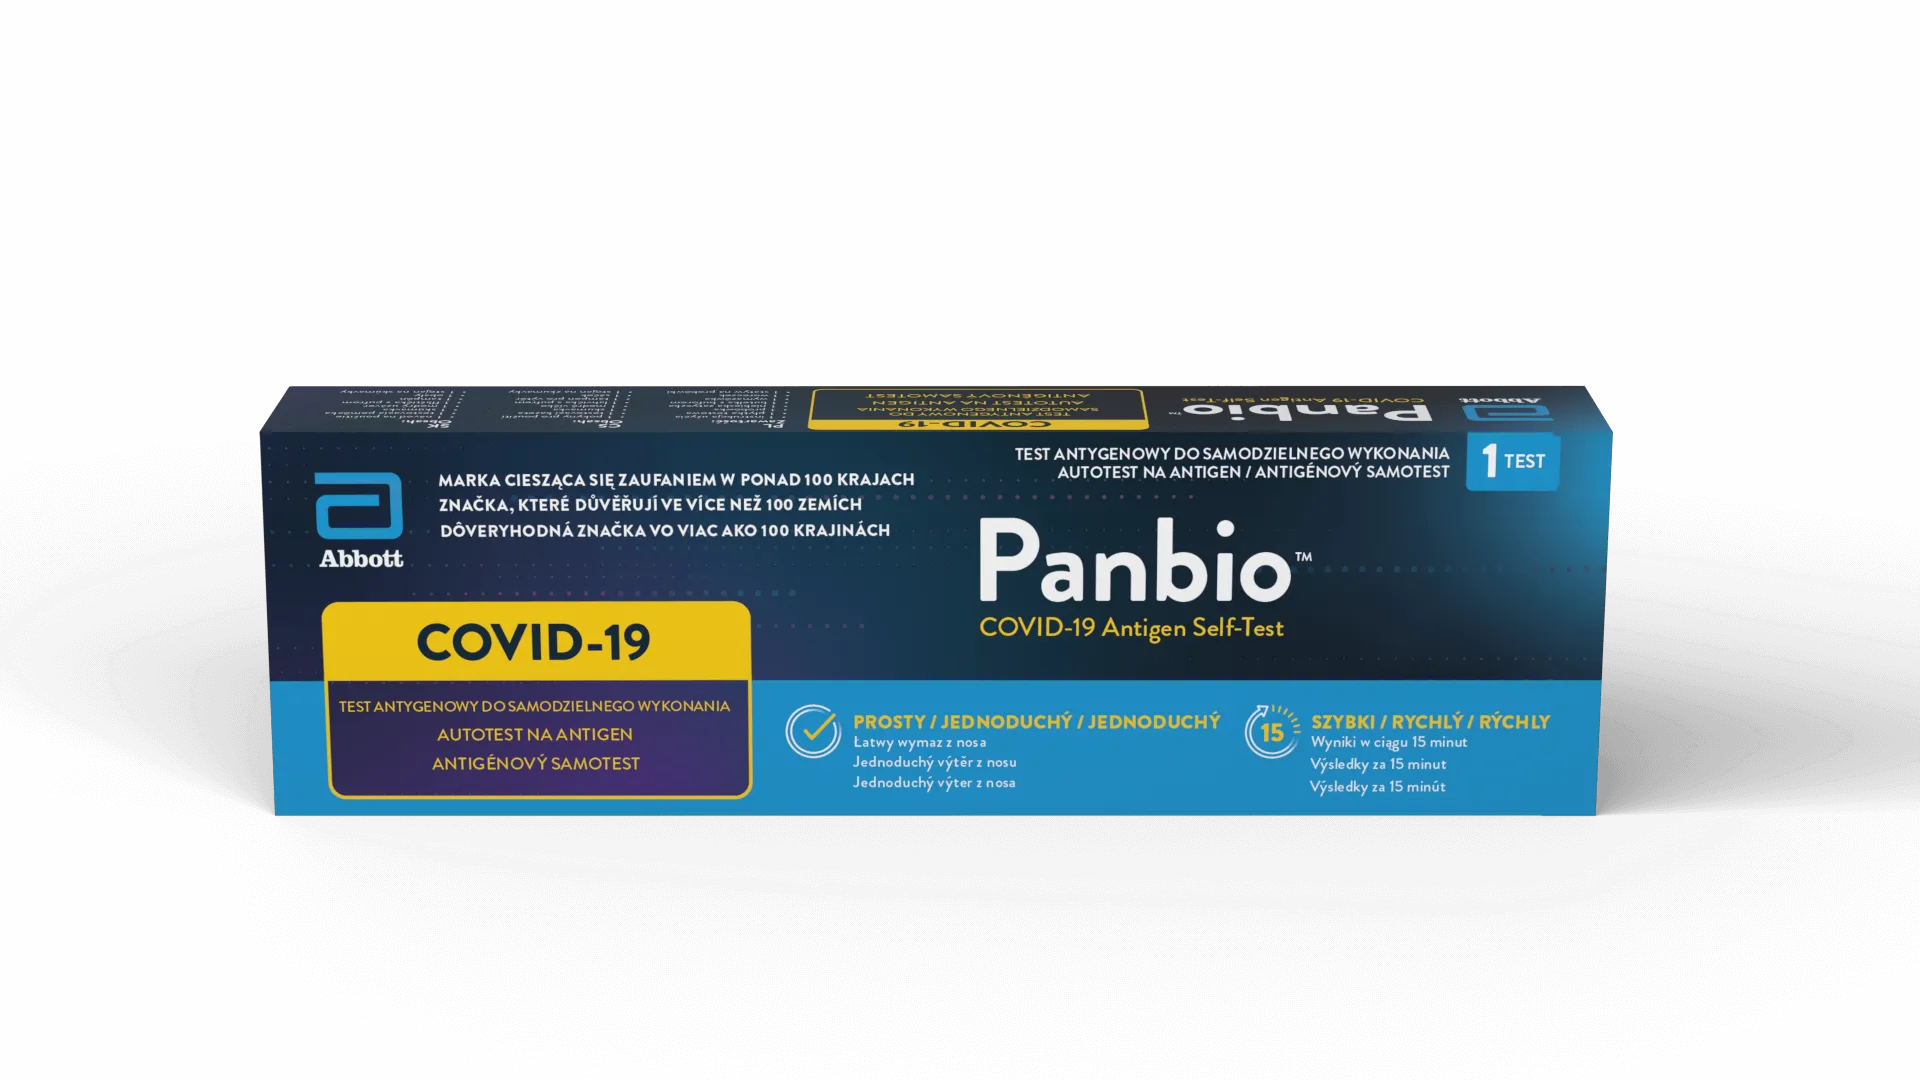  Panbio COVID-19 Antigen Self-Test, test antygenowy do samodzielnego wykonania, 1 sztuka